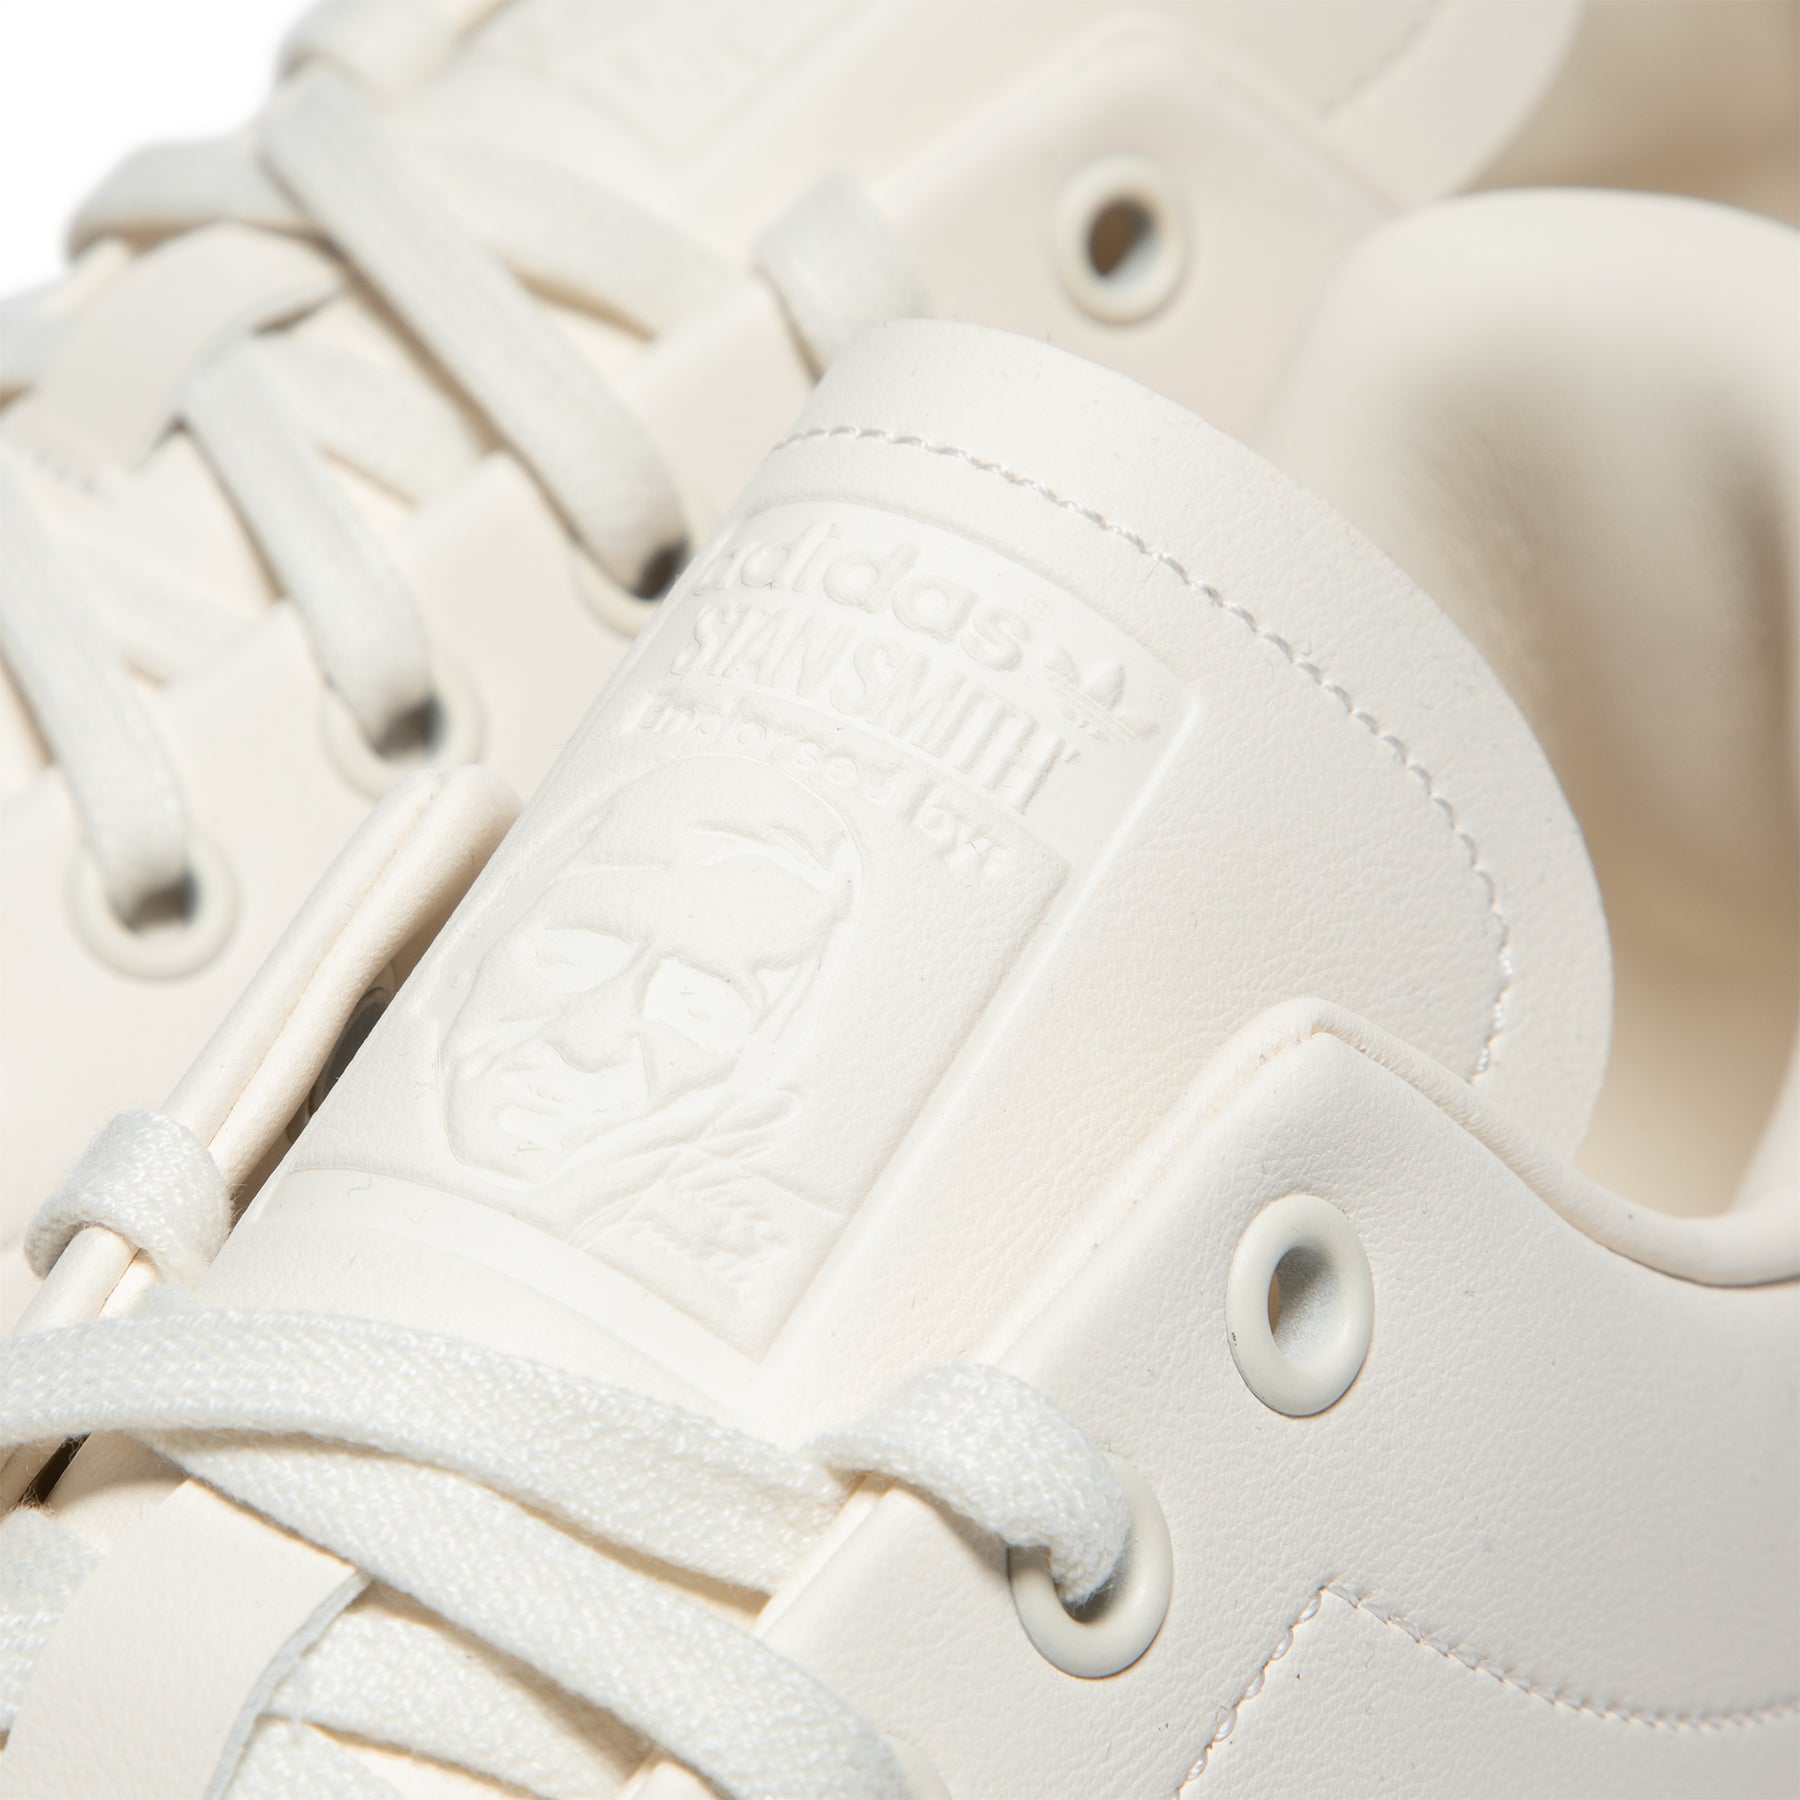 Adidas STAN SMITH LUX White - OWHITE/CWHITE/DBROWN